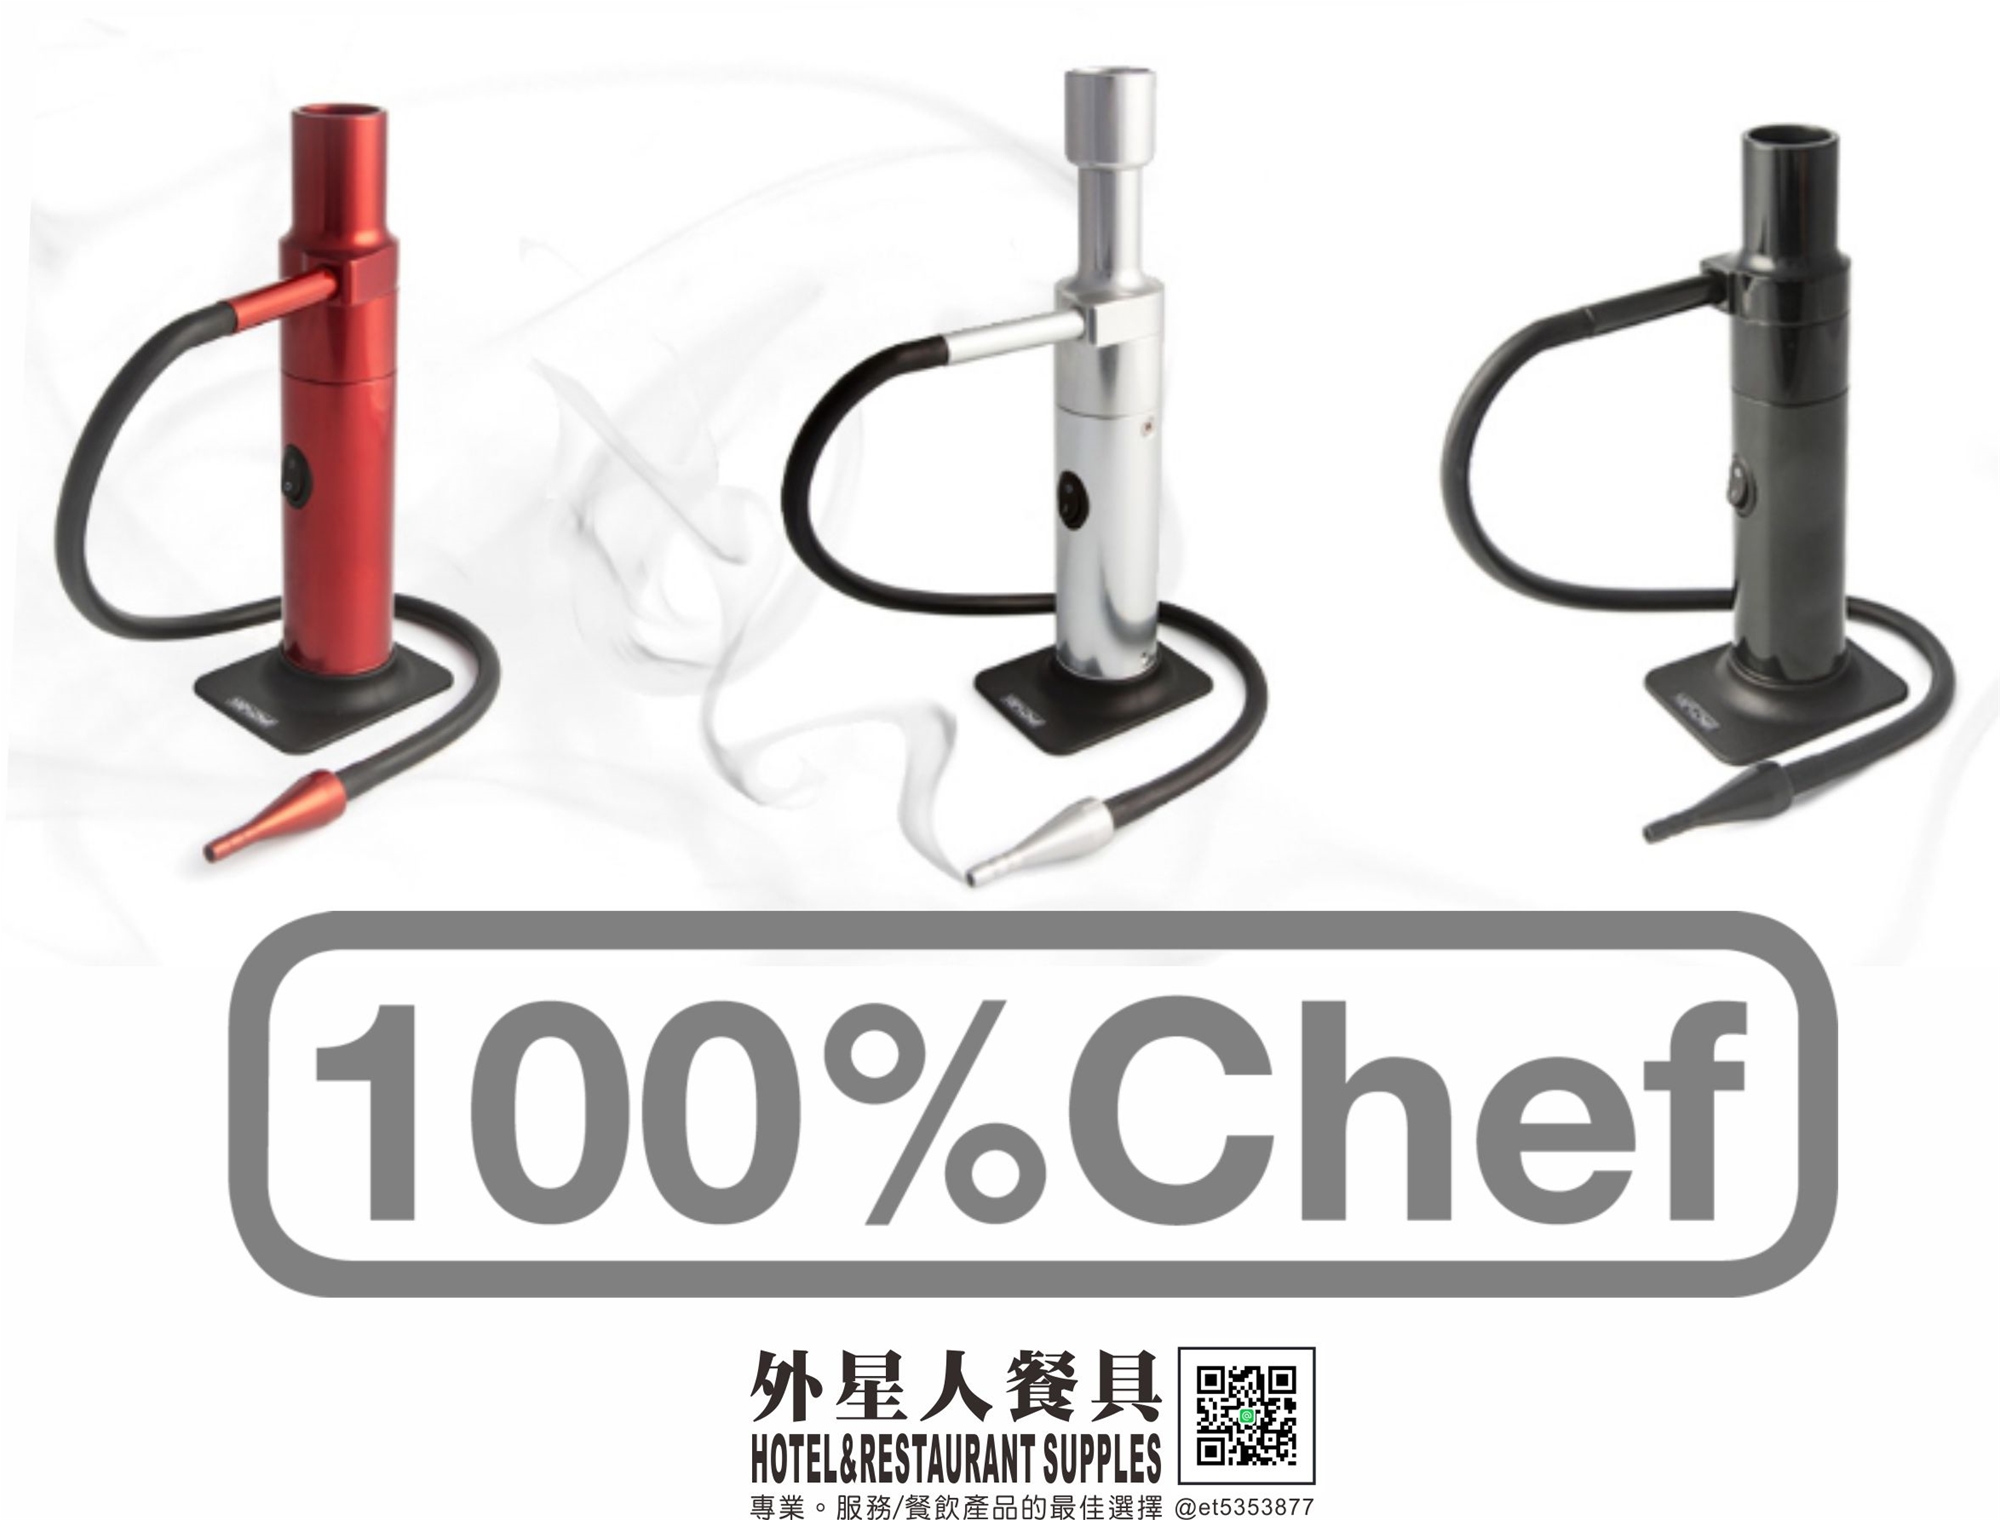 煙燻槍-西班牙阿拉丁(100%chef)(紅/黑)